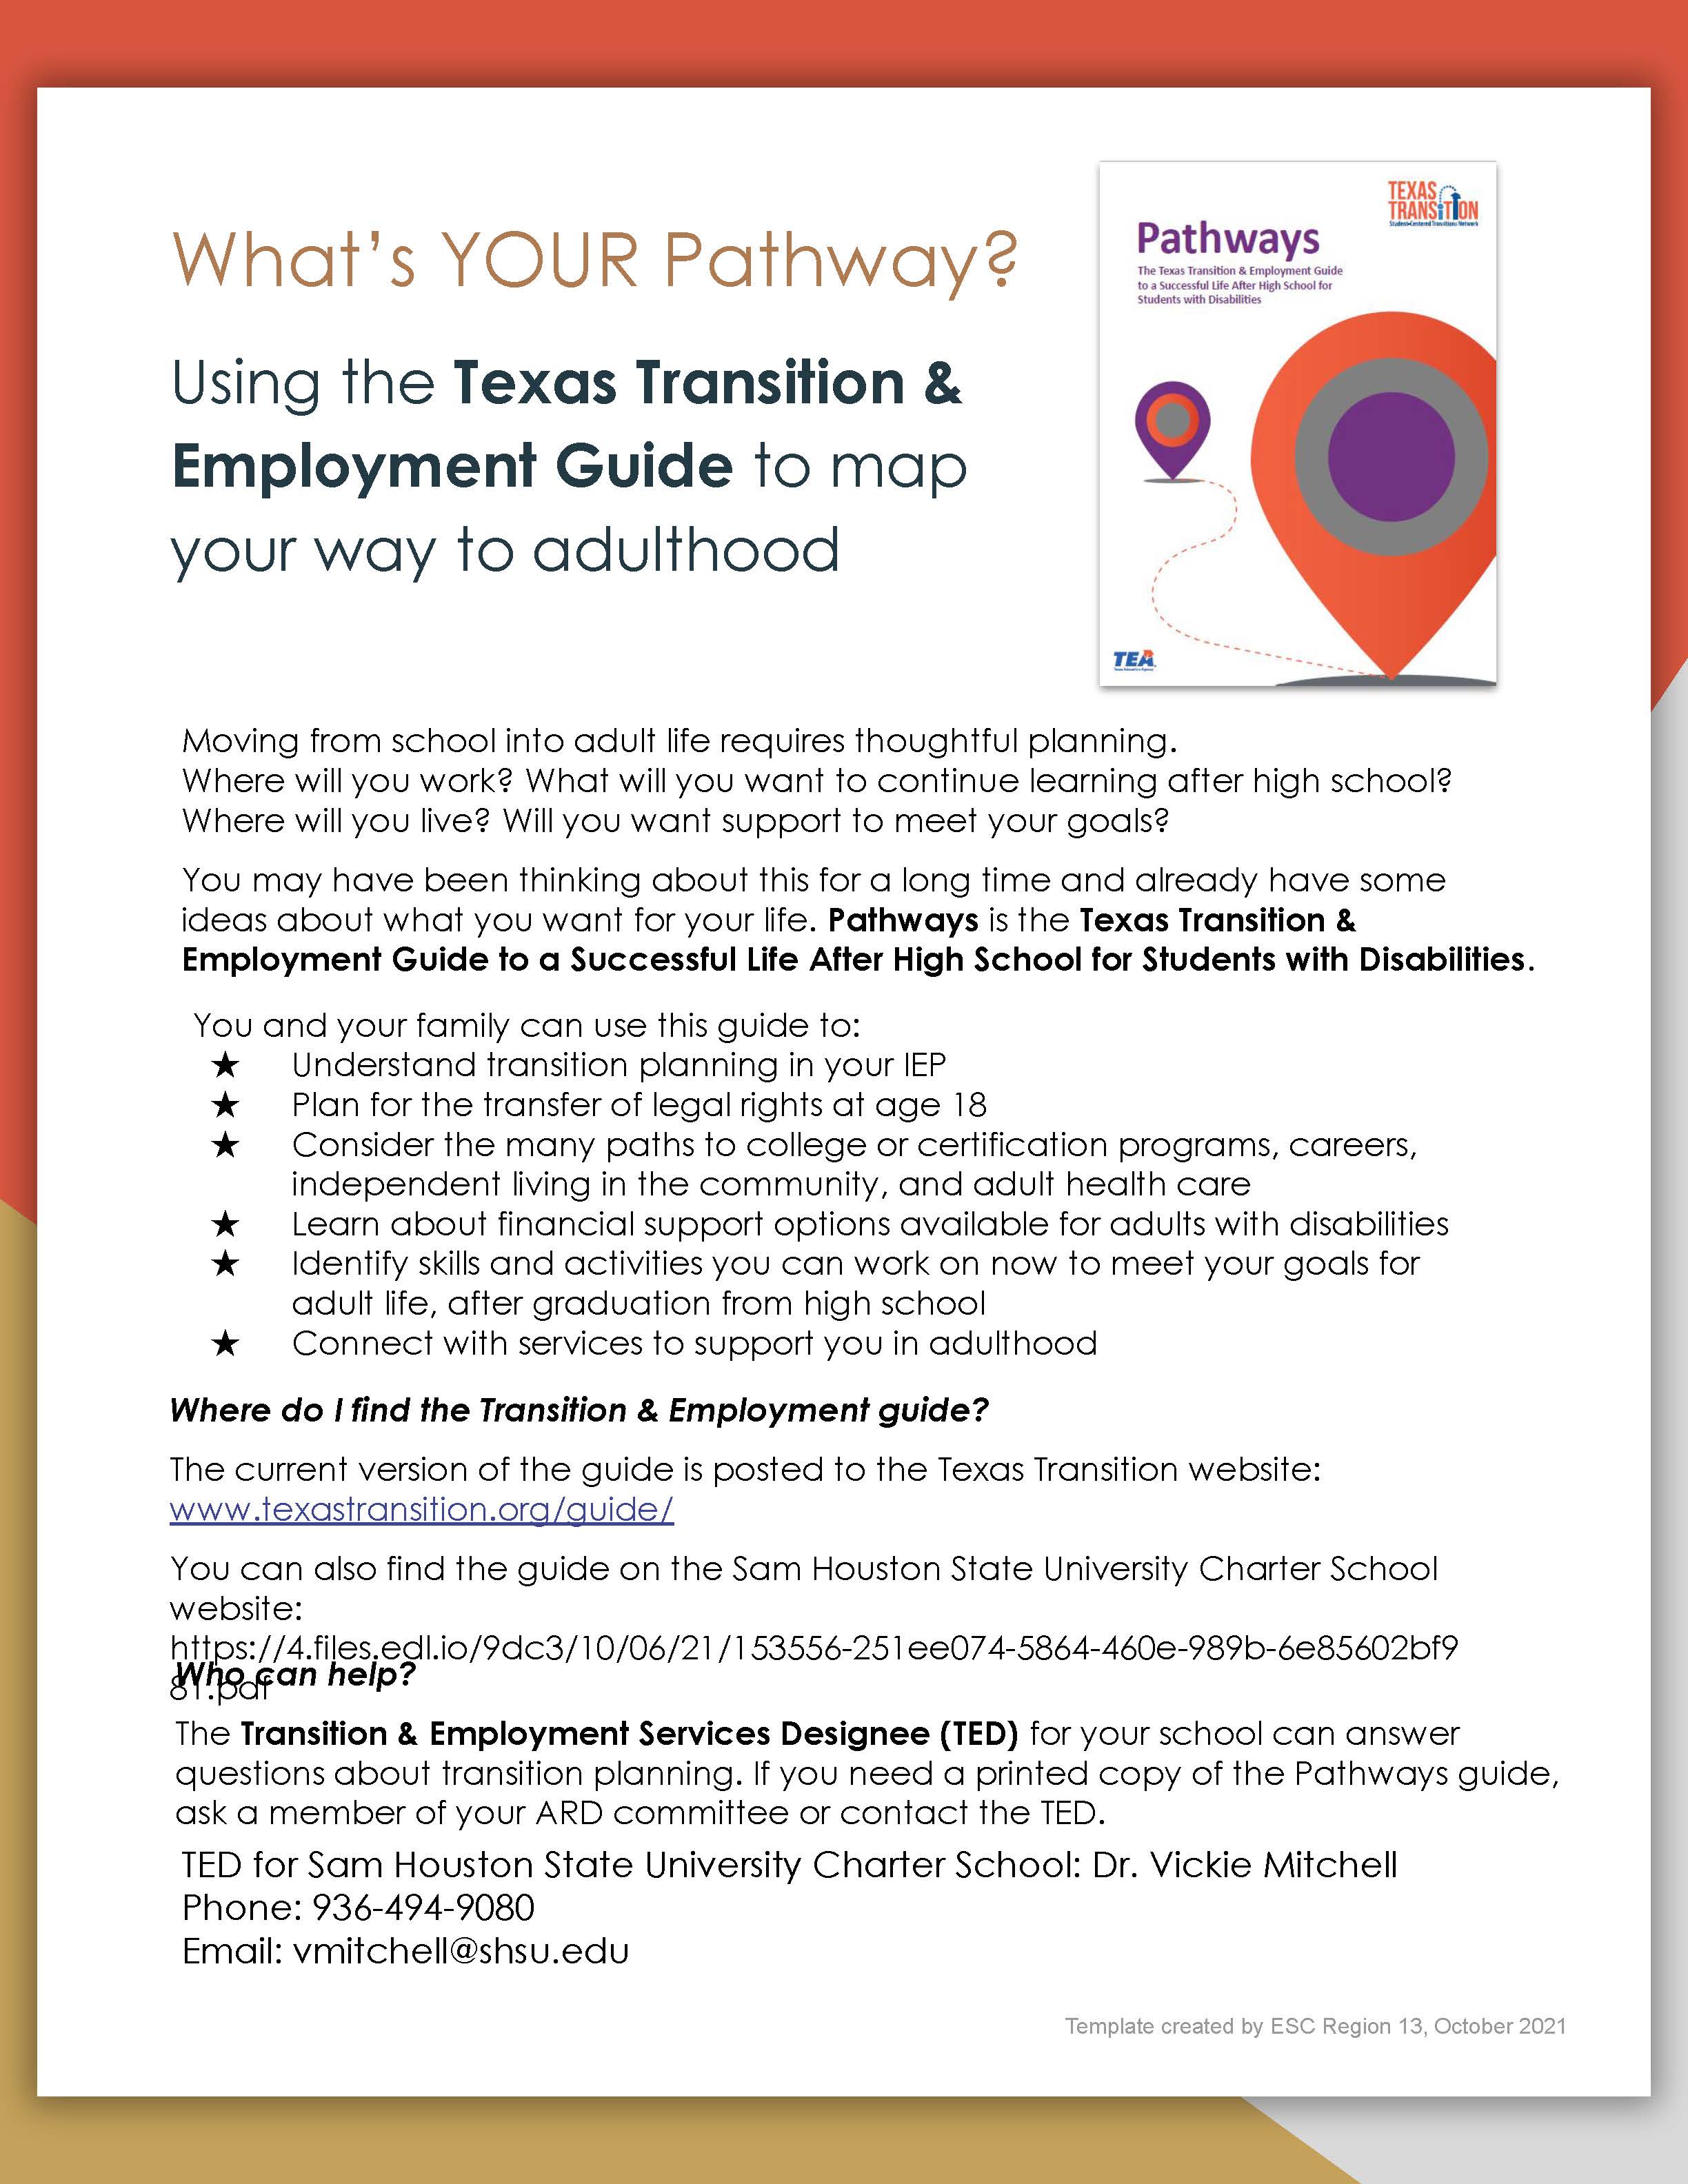 Pathways flyer_Sam Houston State University Charter School (1)